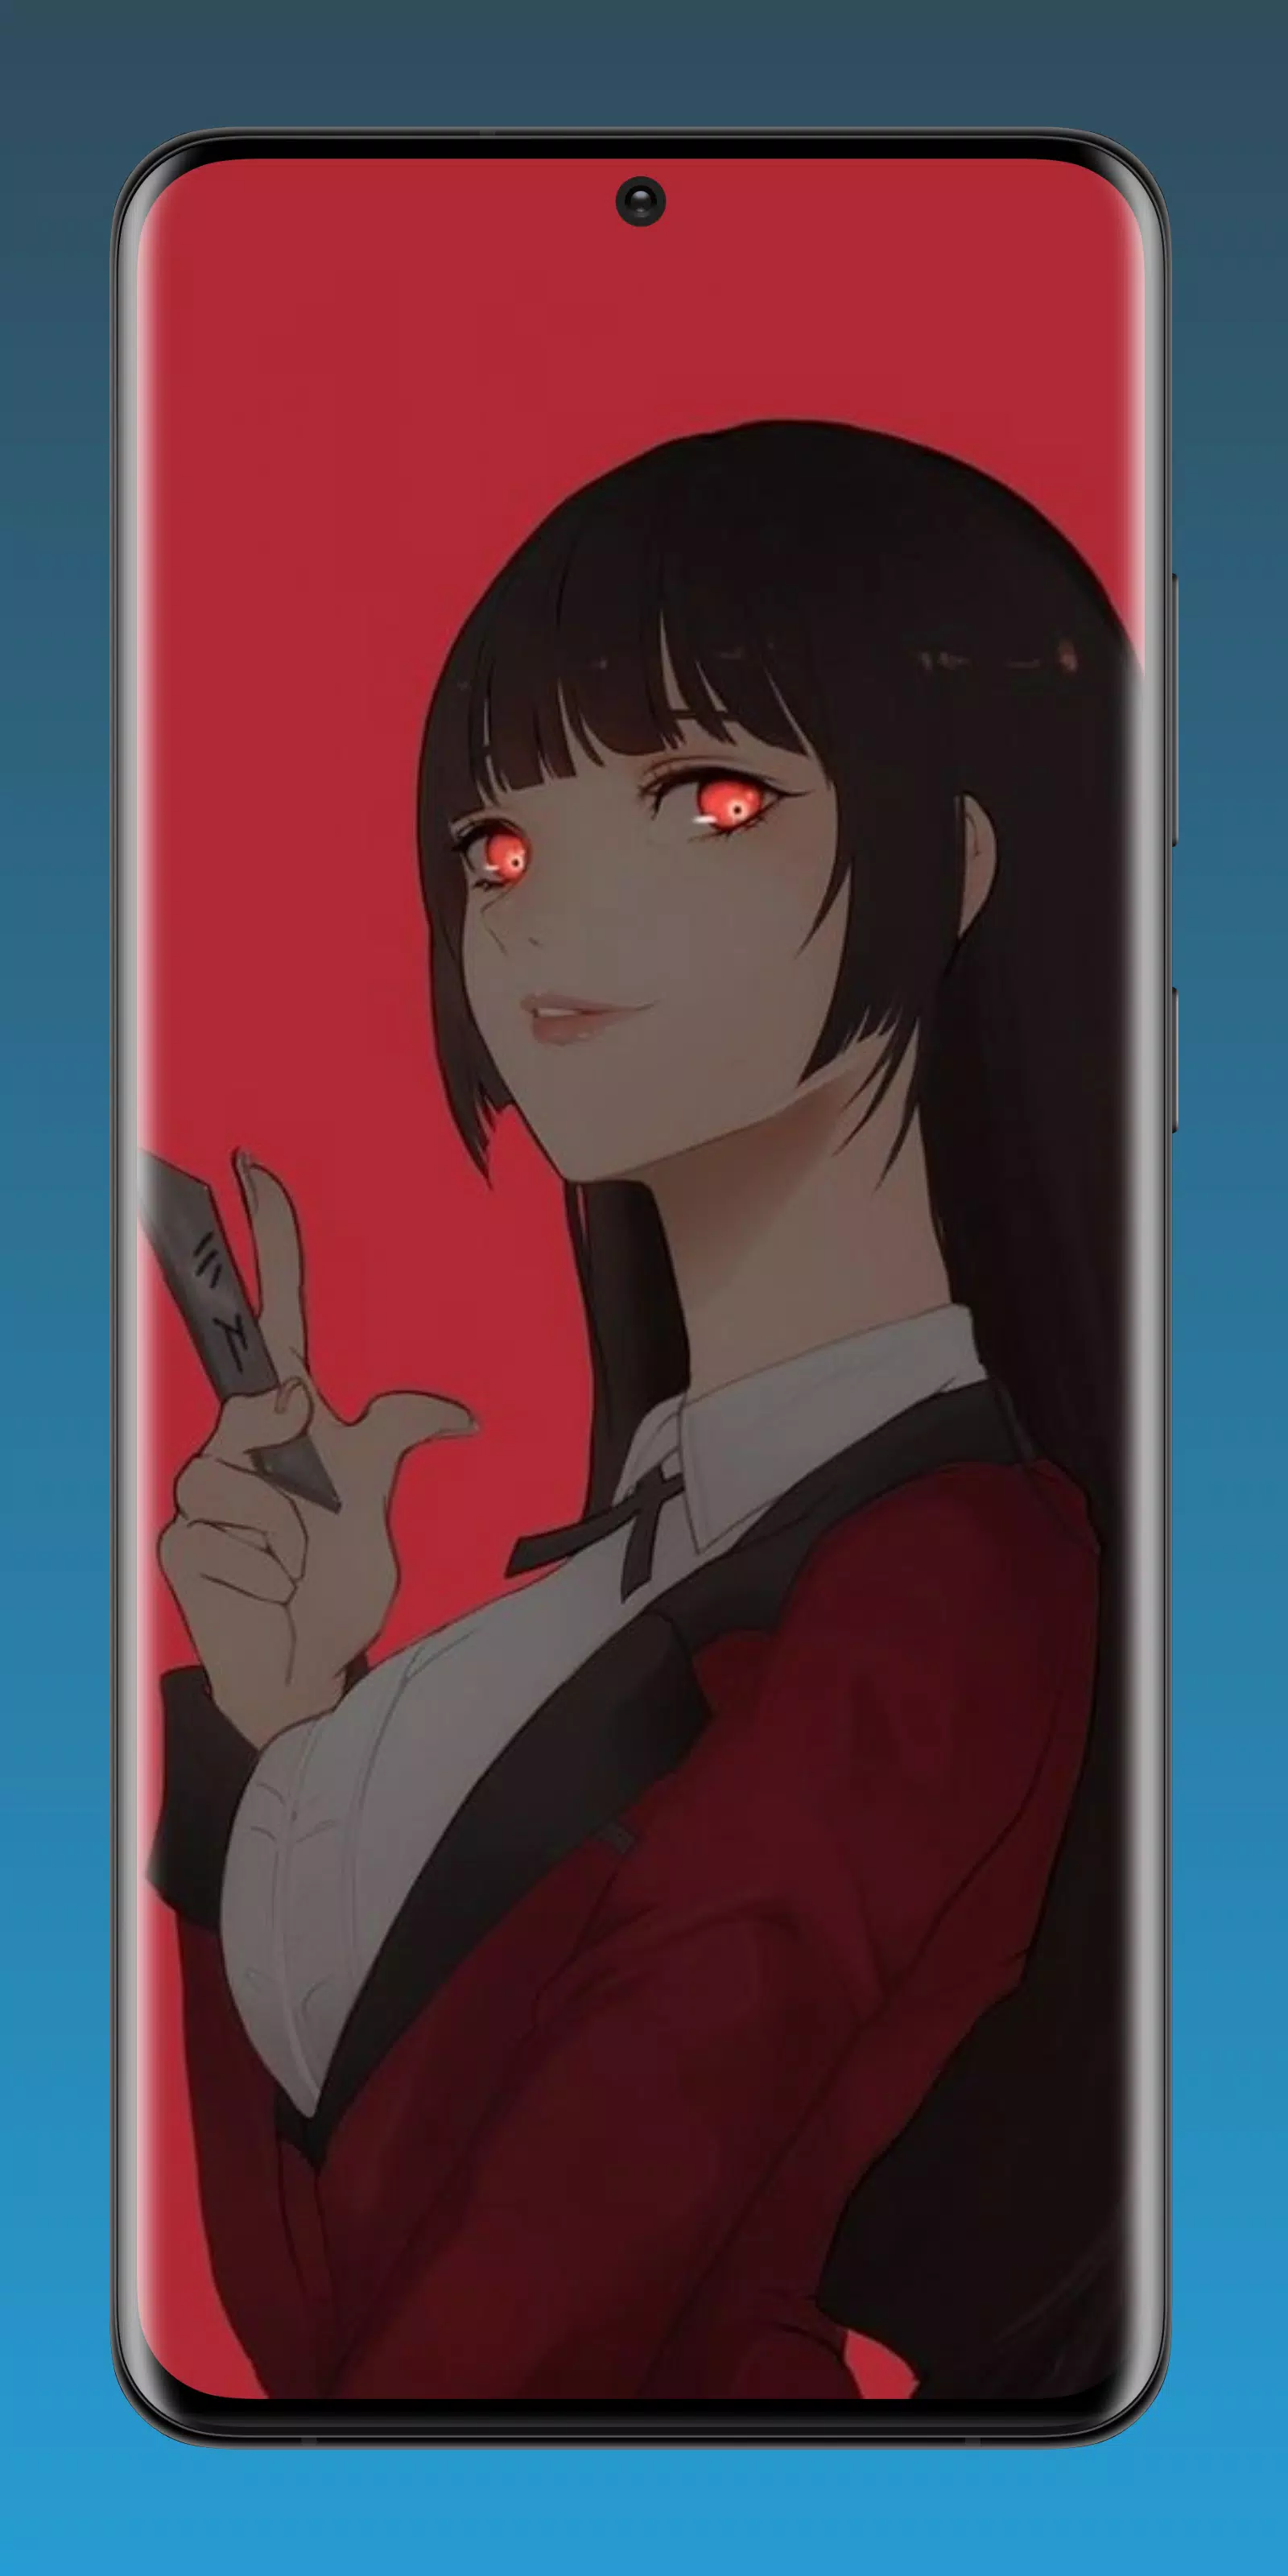 Download do APK de Kawaii Anime Girl Wallpaper para Android